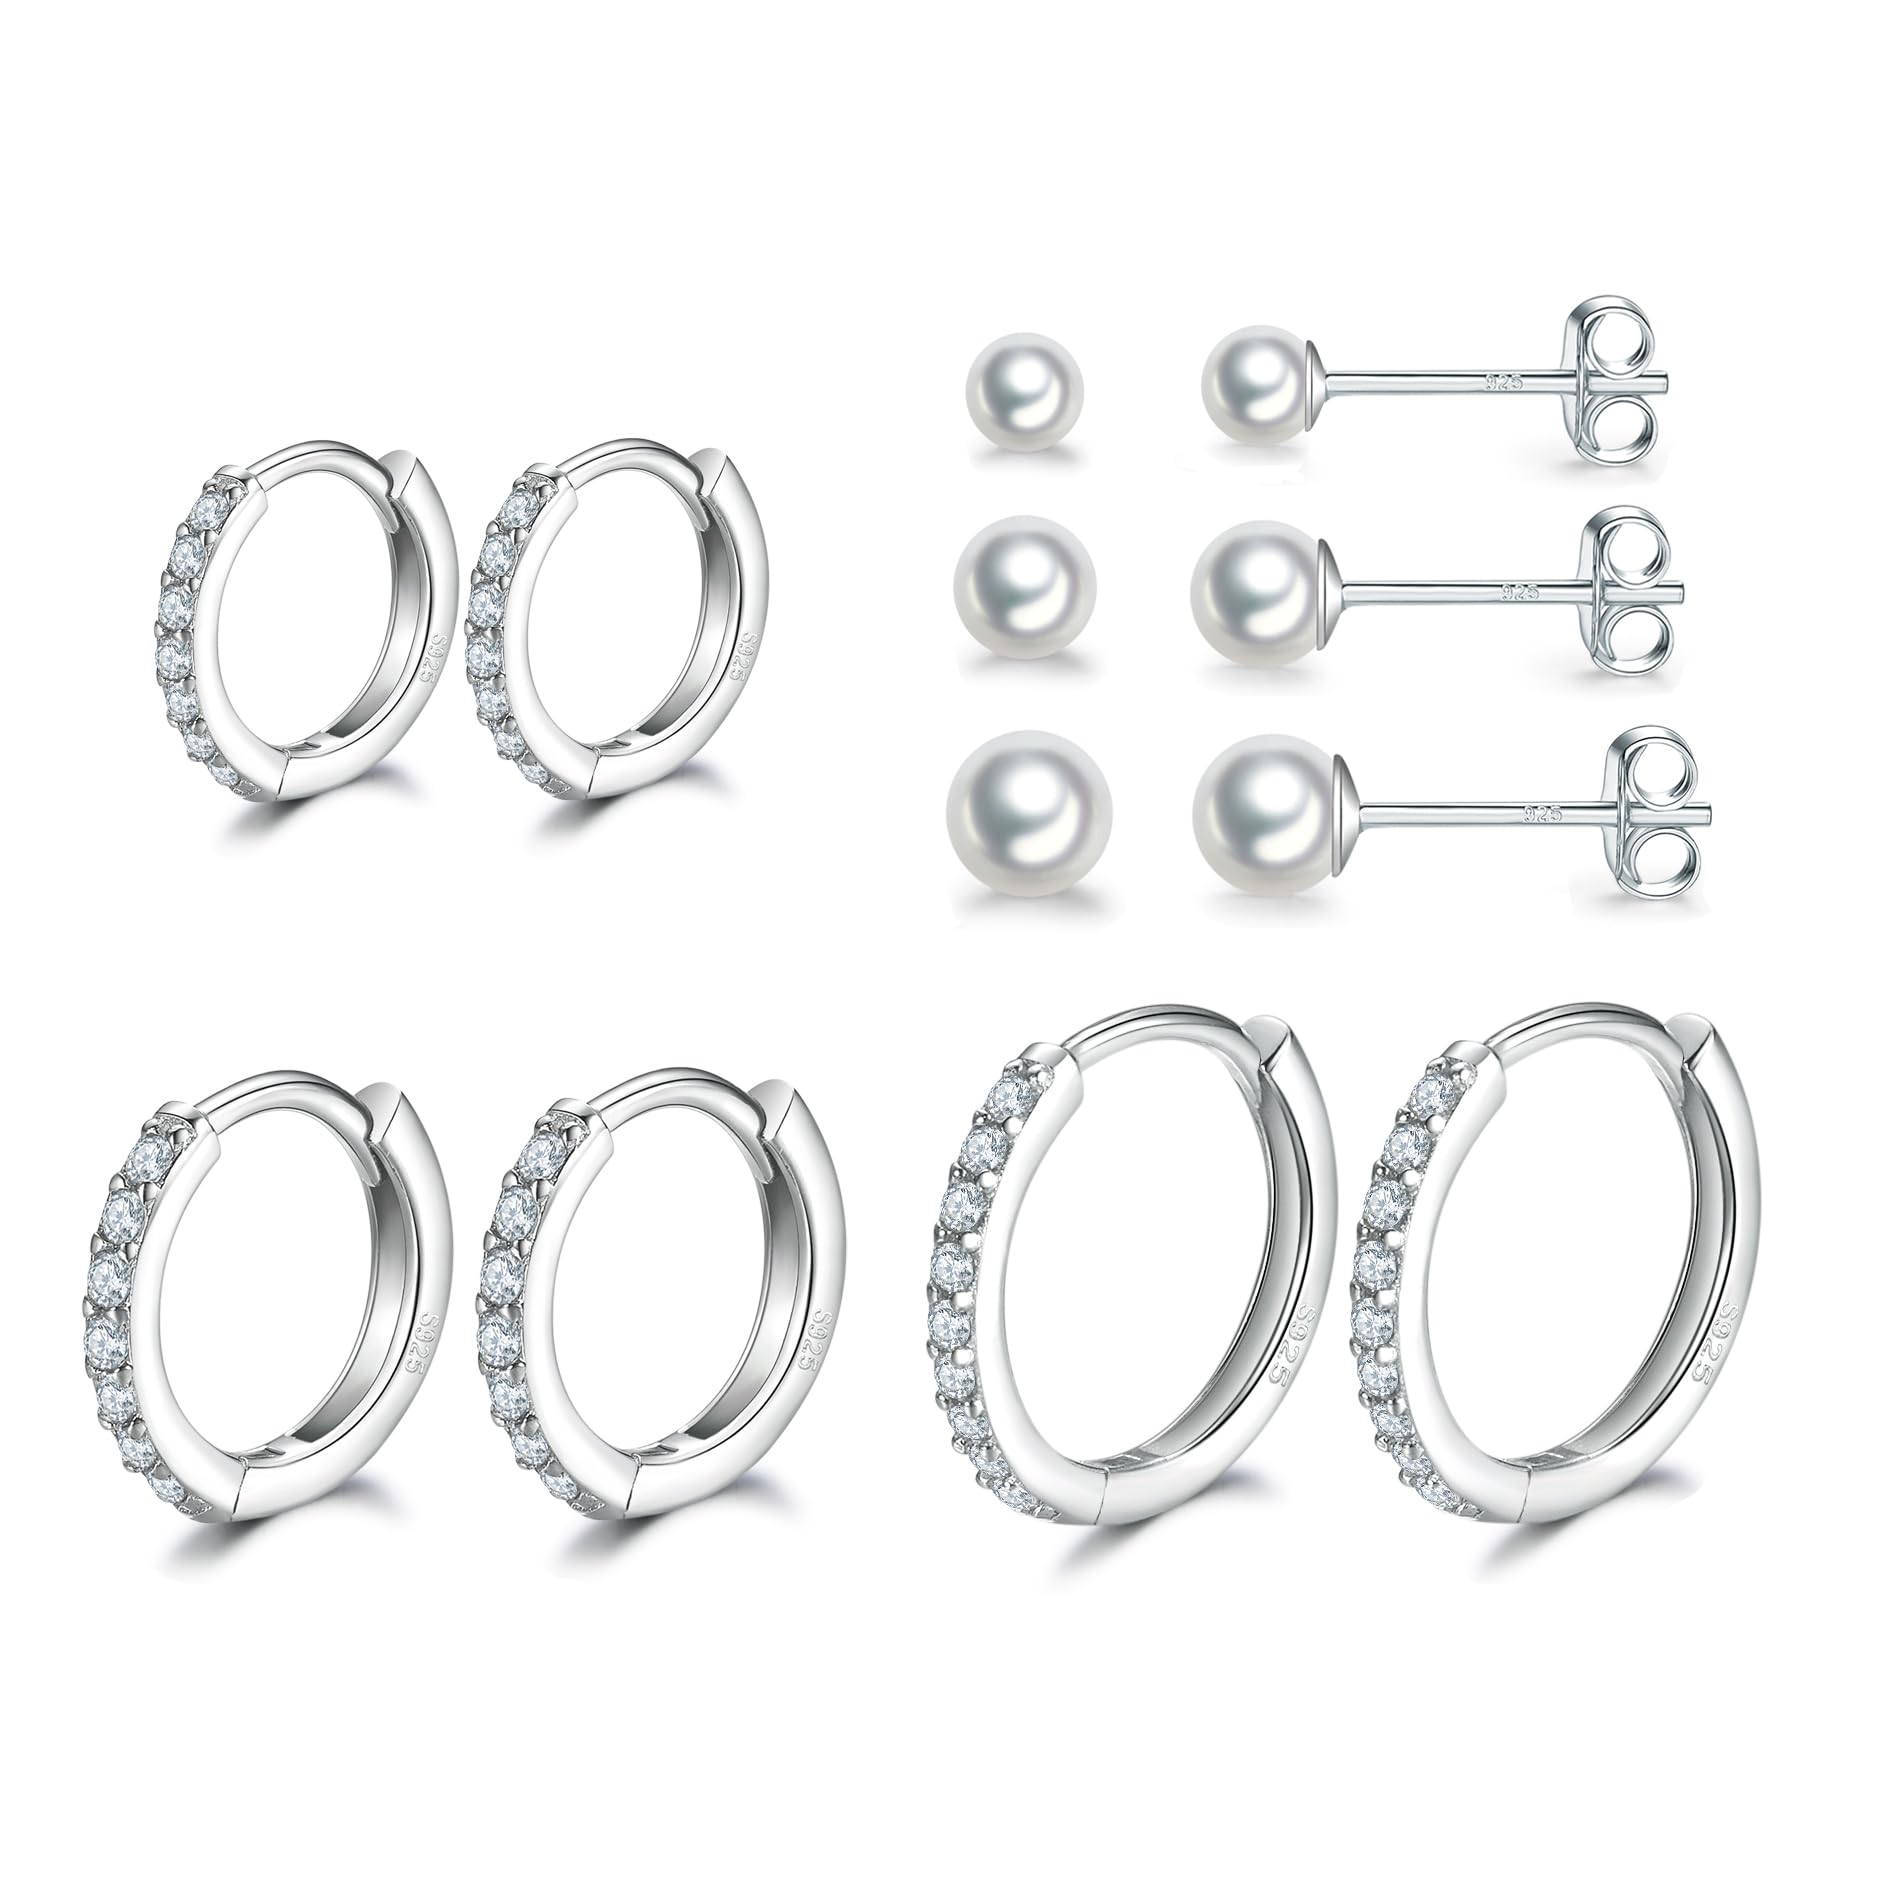 Dlihc Sterling Silver Hoop Earrings | Sterling Silver Stud Earrings for Women - 6 Pairs Hypoallergenic Tiny Pearl Earrings Set & Carti